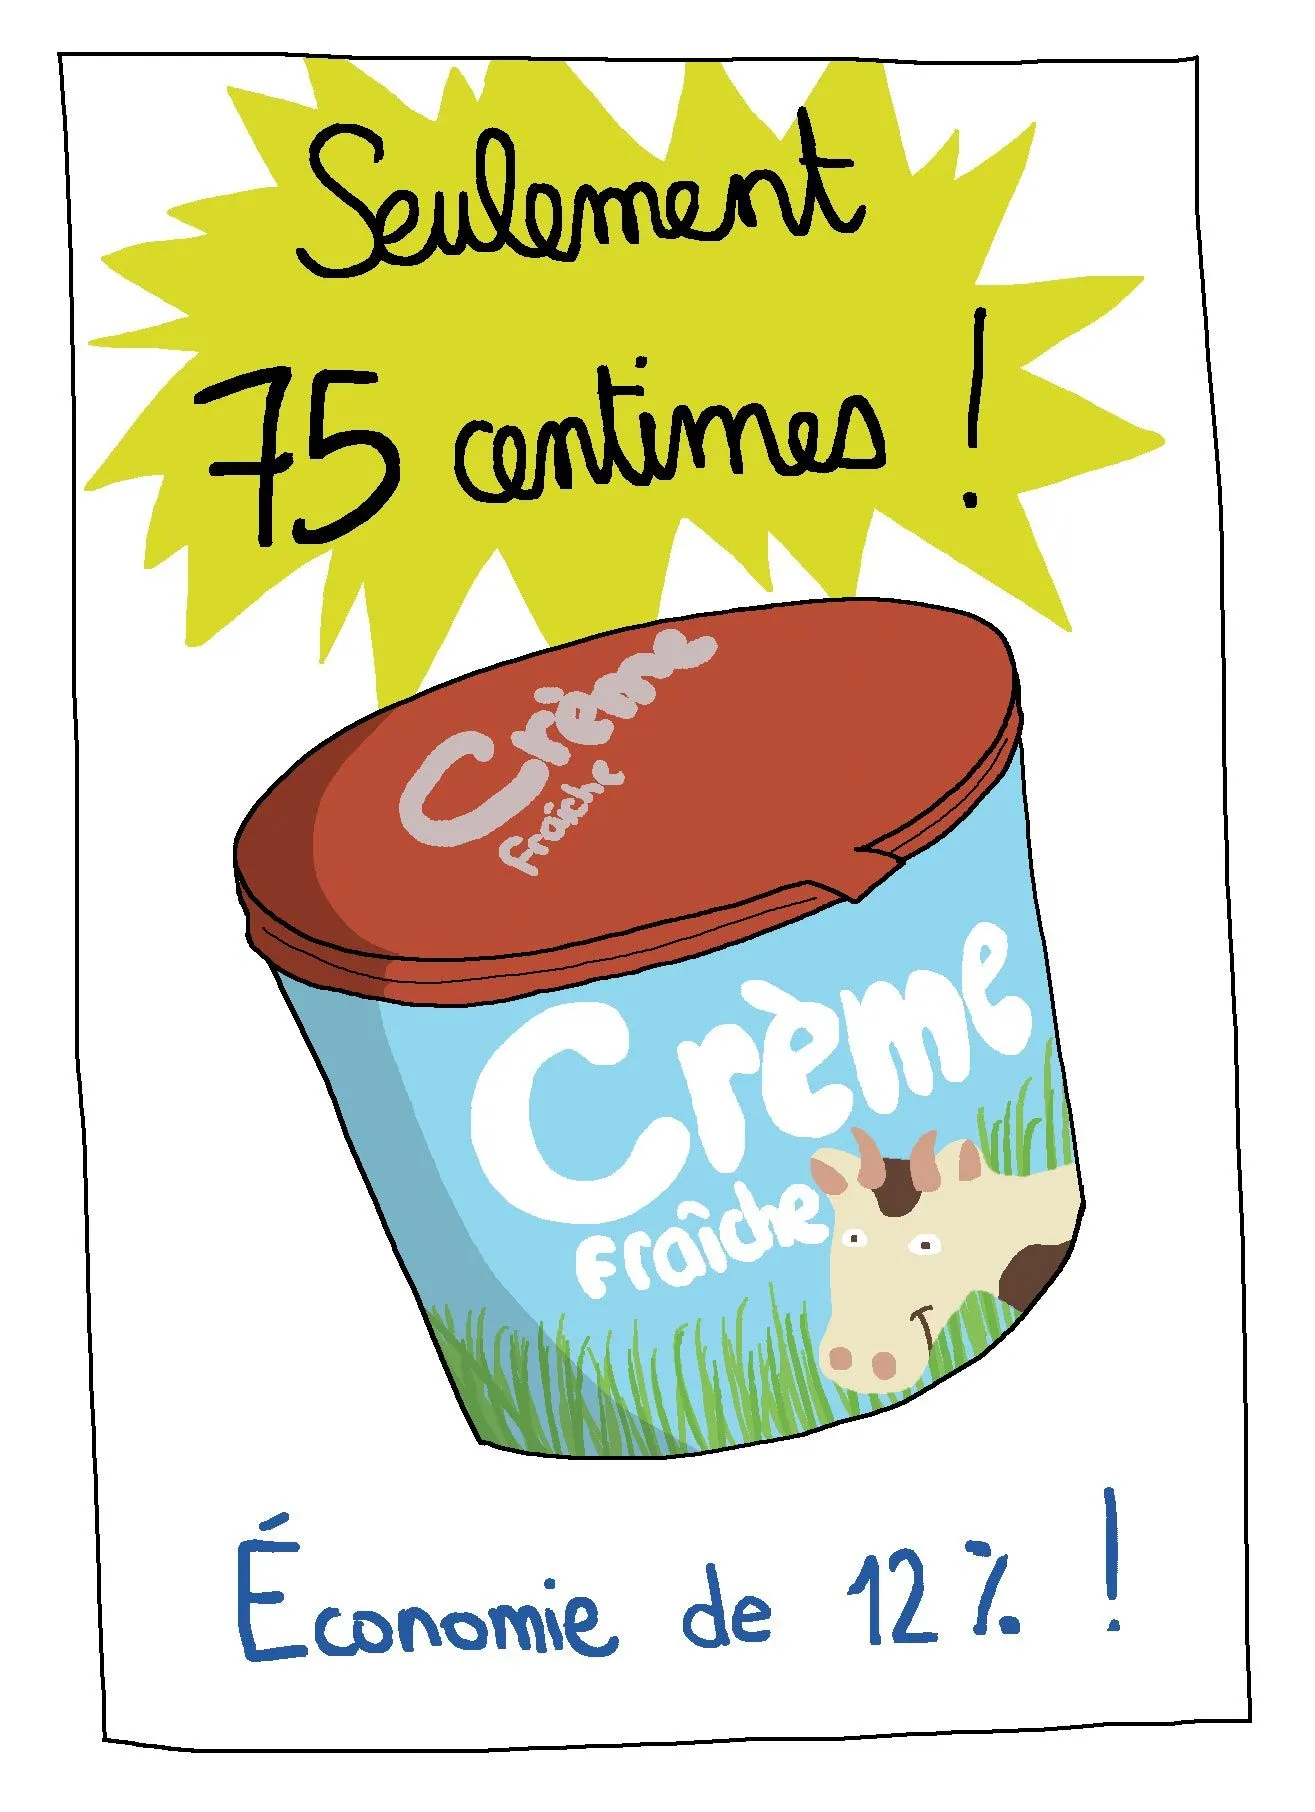 Affiche représentant un pot de crème à 75 centimes, exprimant une économie de 12%.